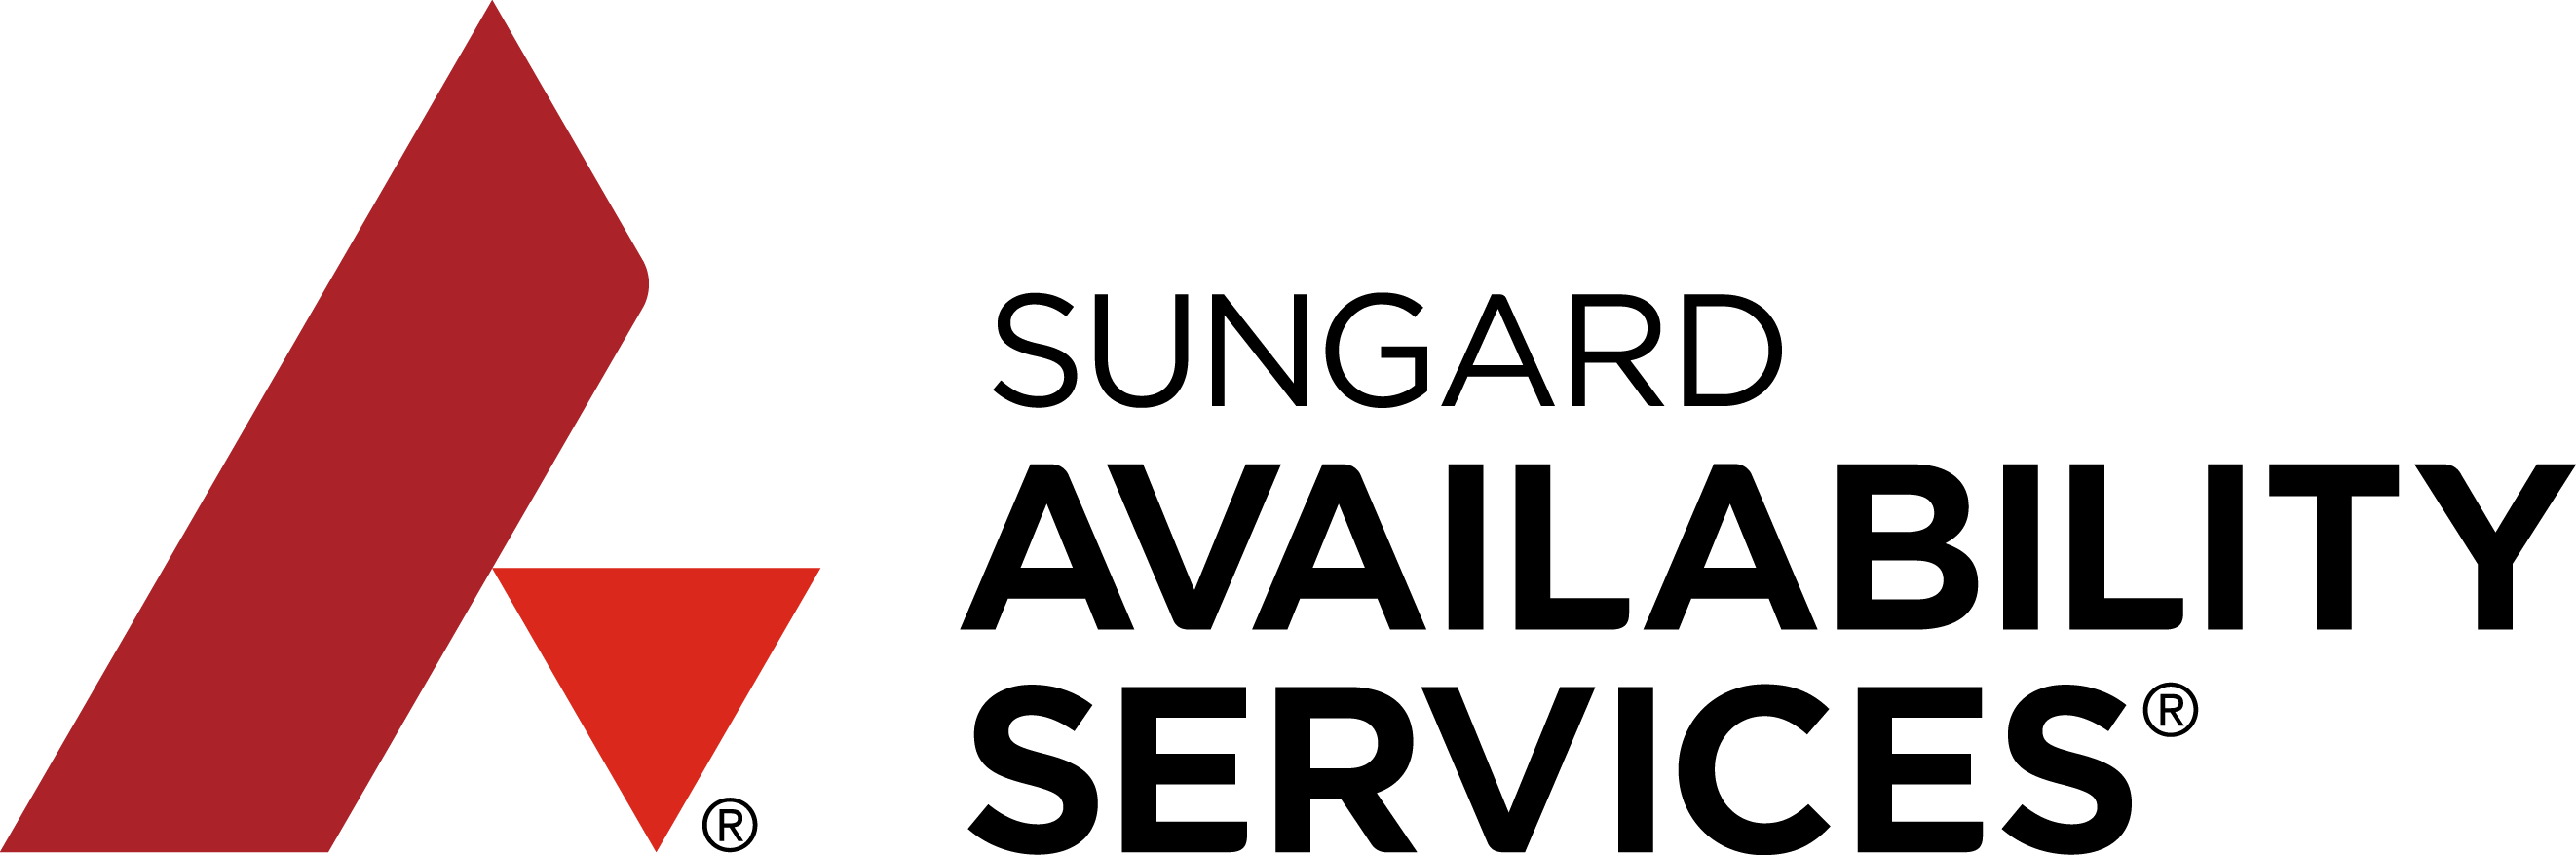 Sungard Availability Services Logo